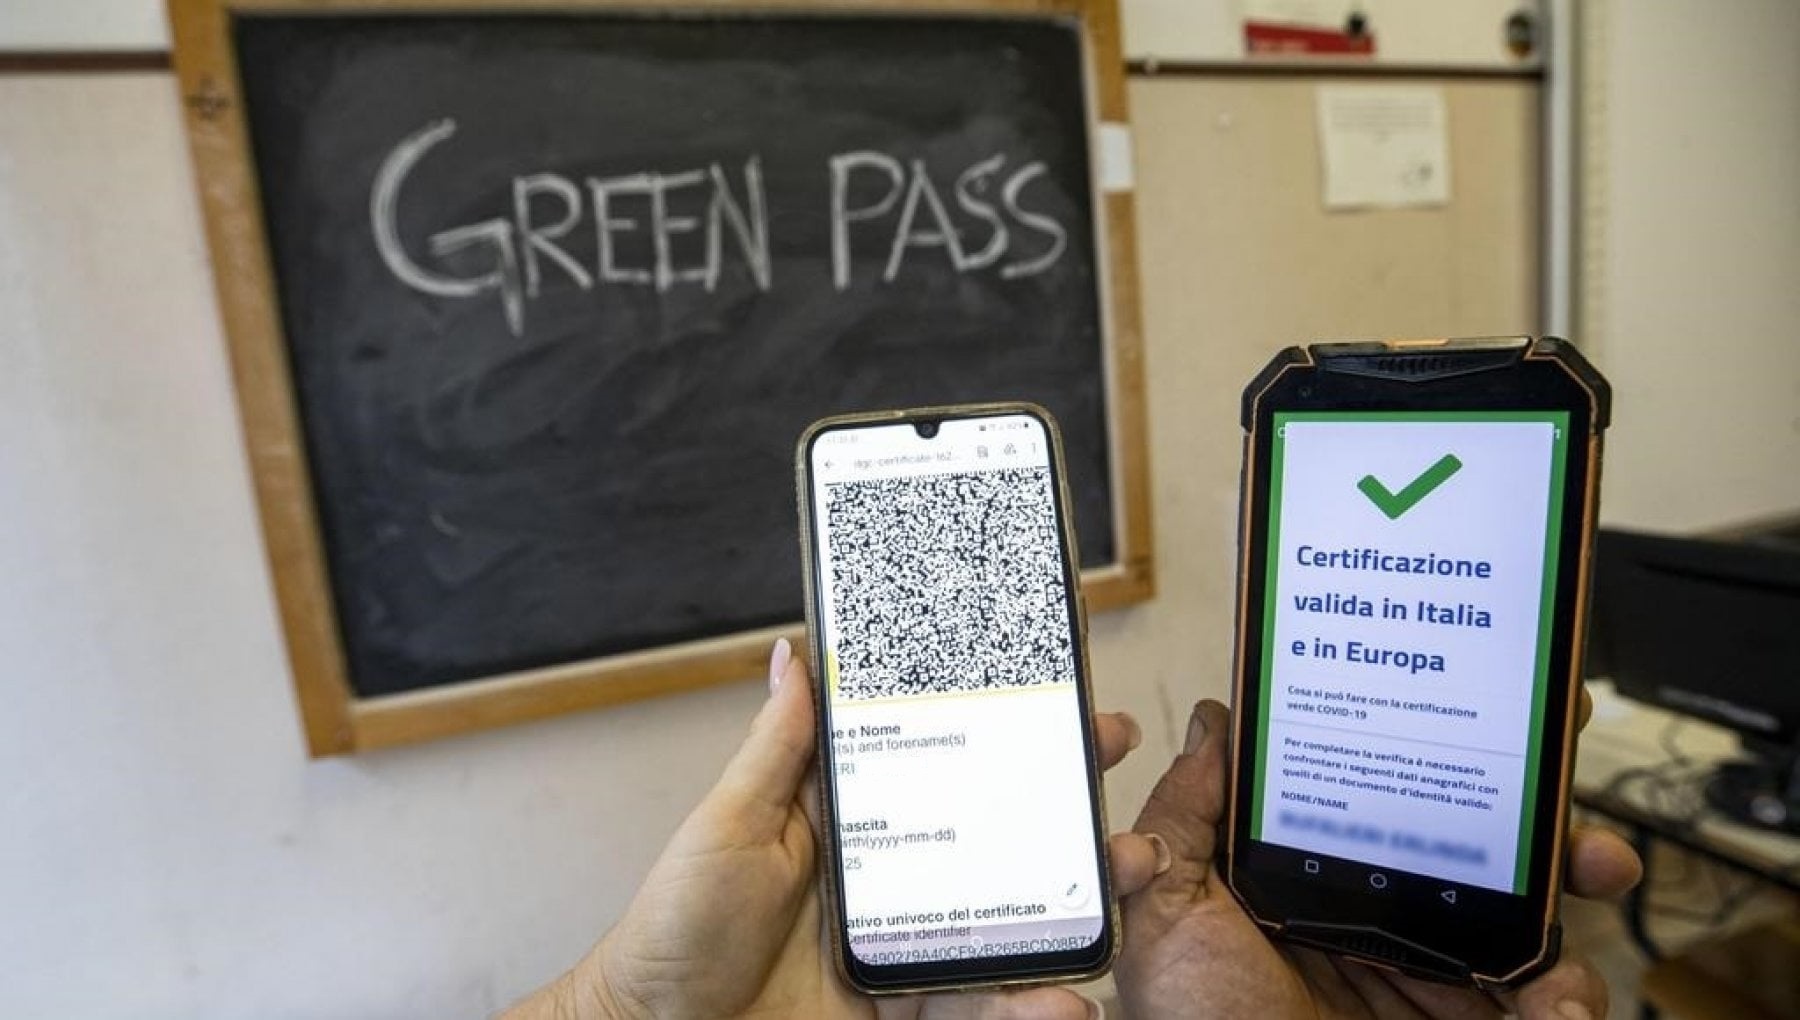 Insegnanti e Green pass: la certificazione verde davanti a una lavagna